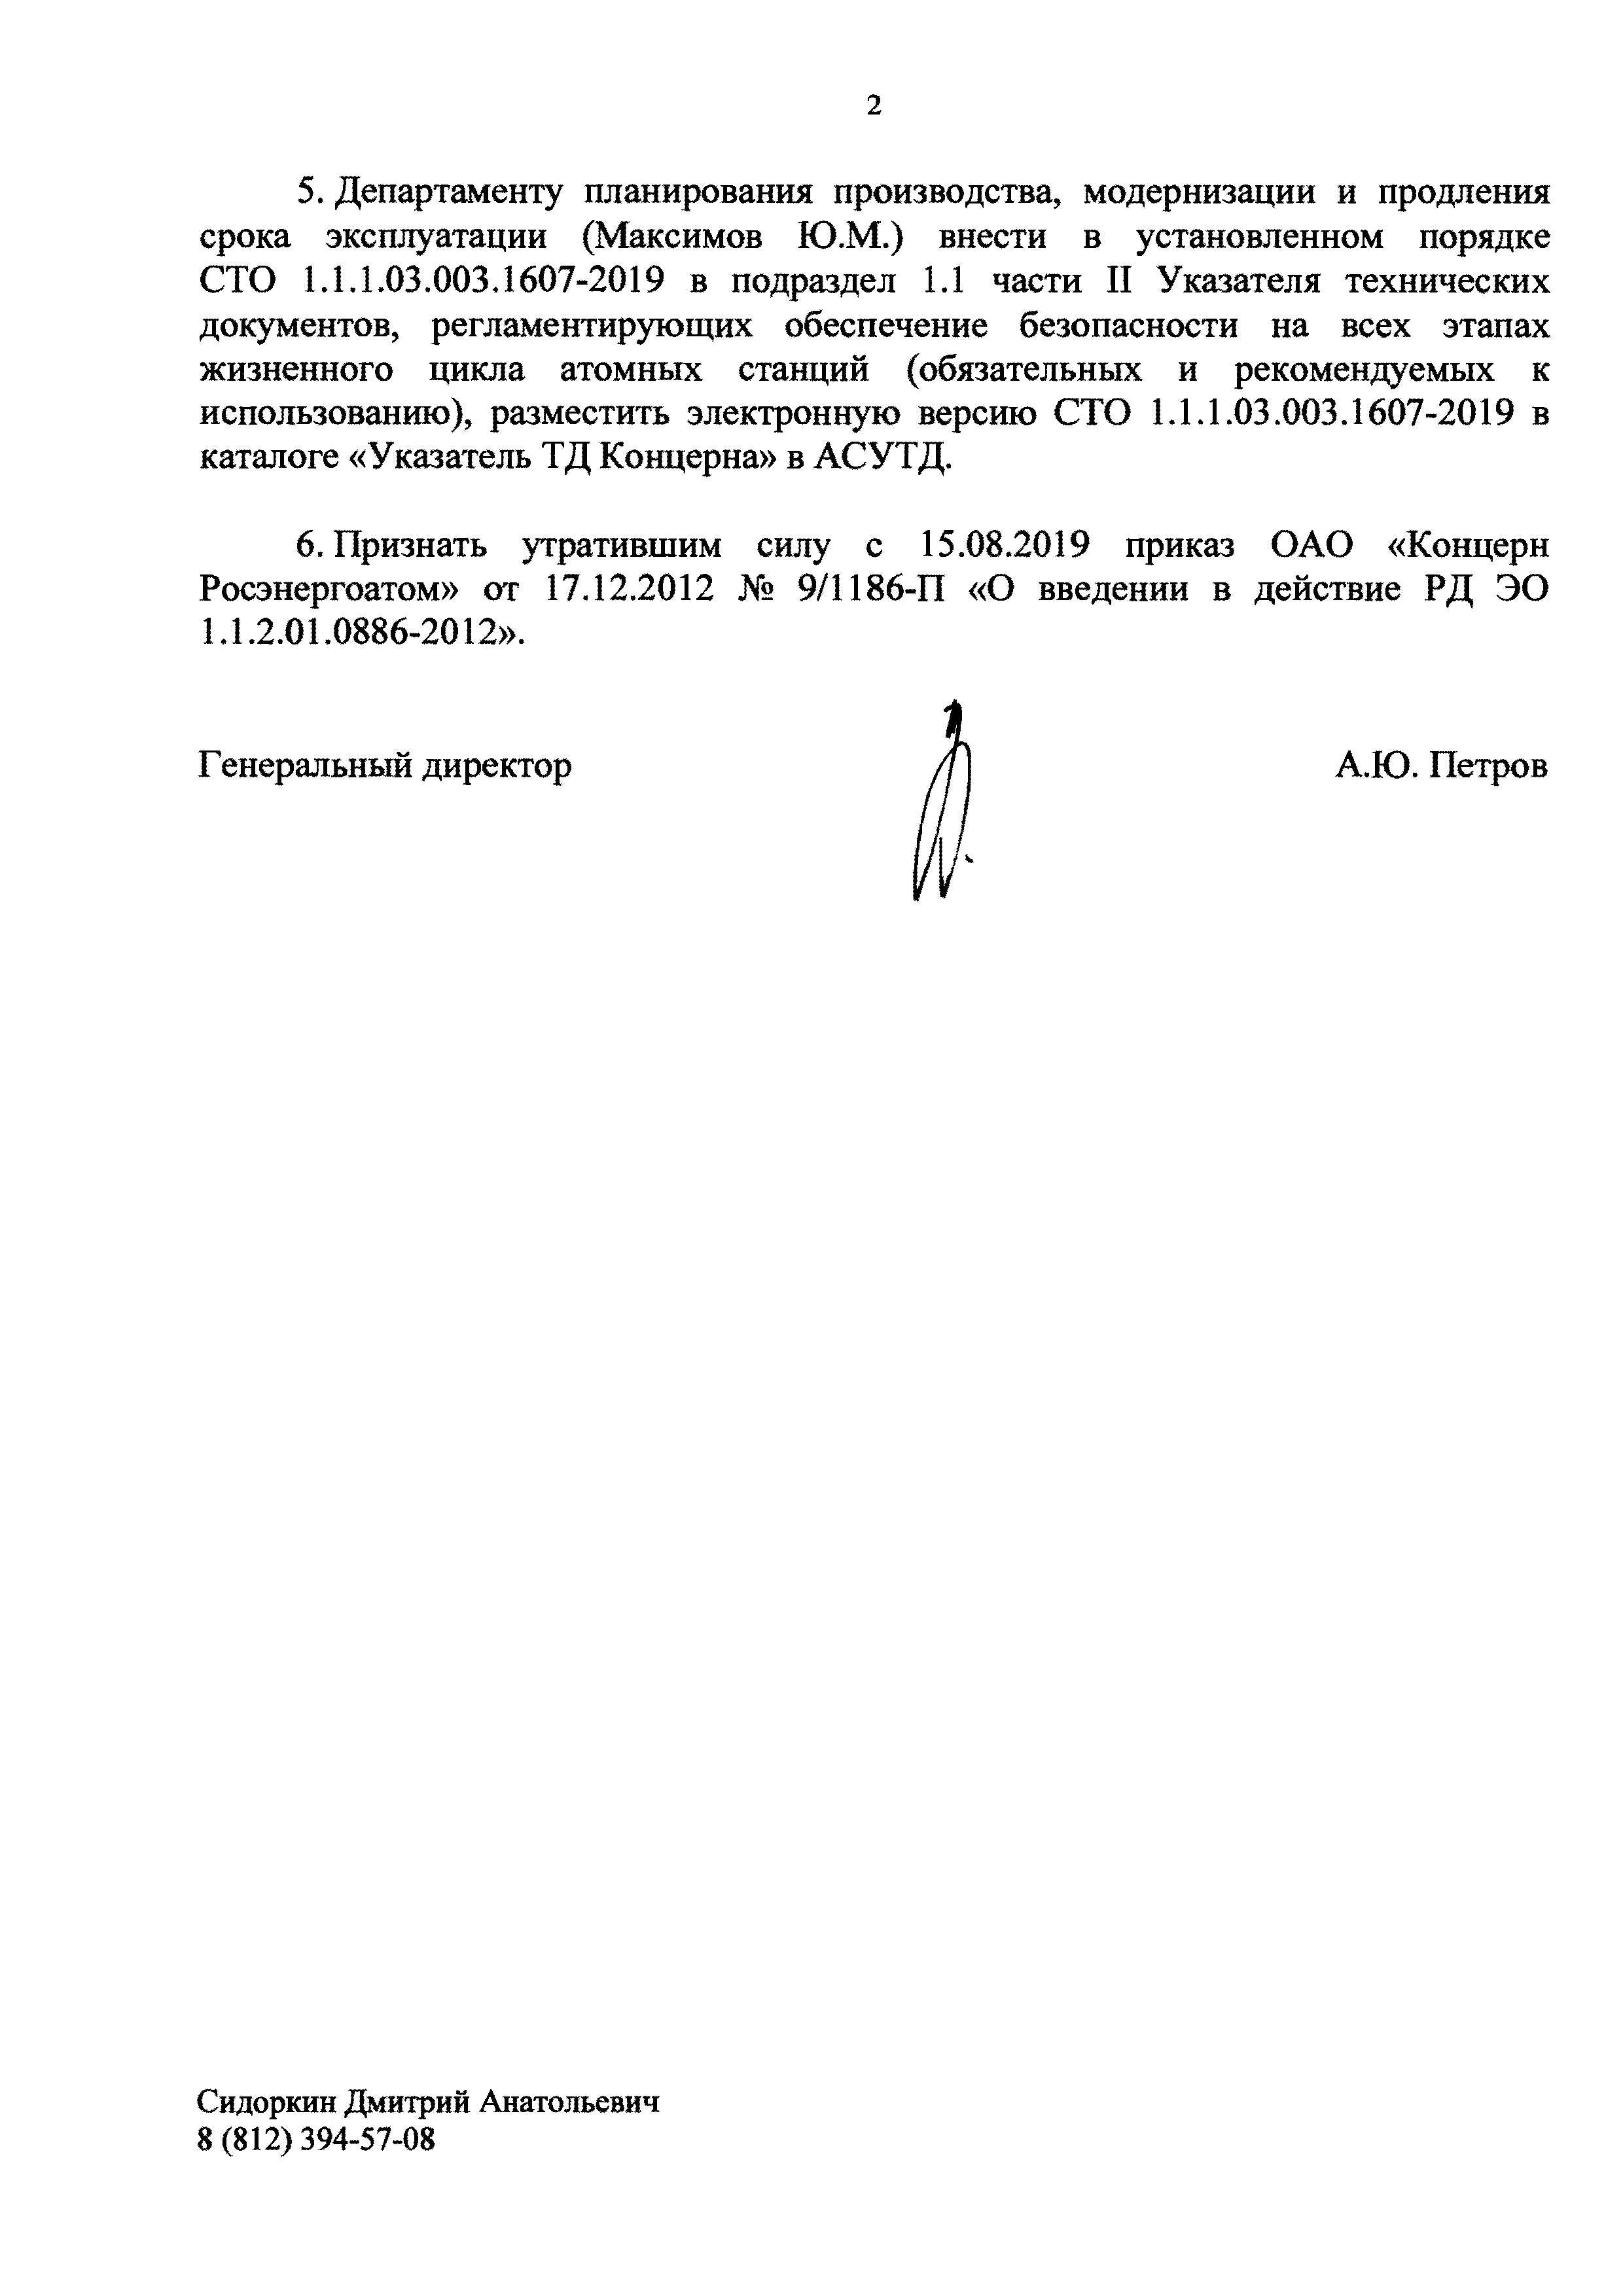 СТО 1.1.1.03.003.1607-2019